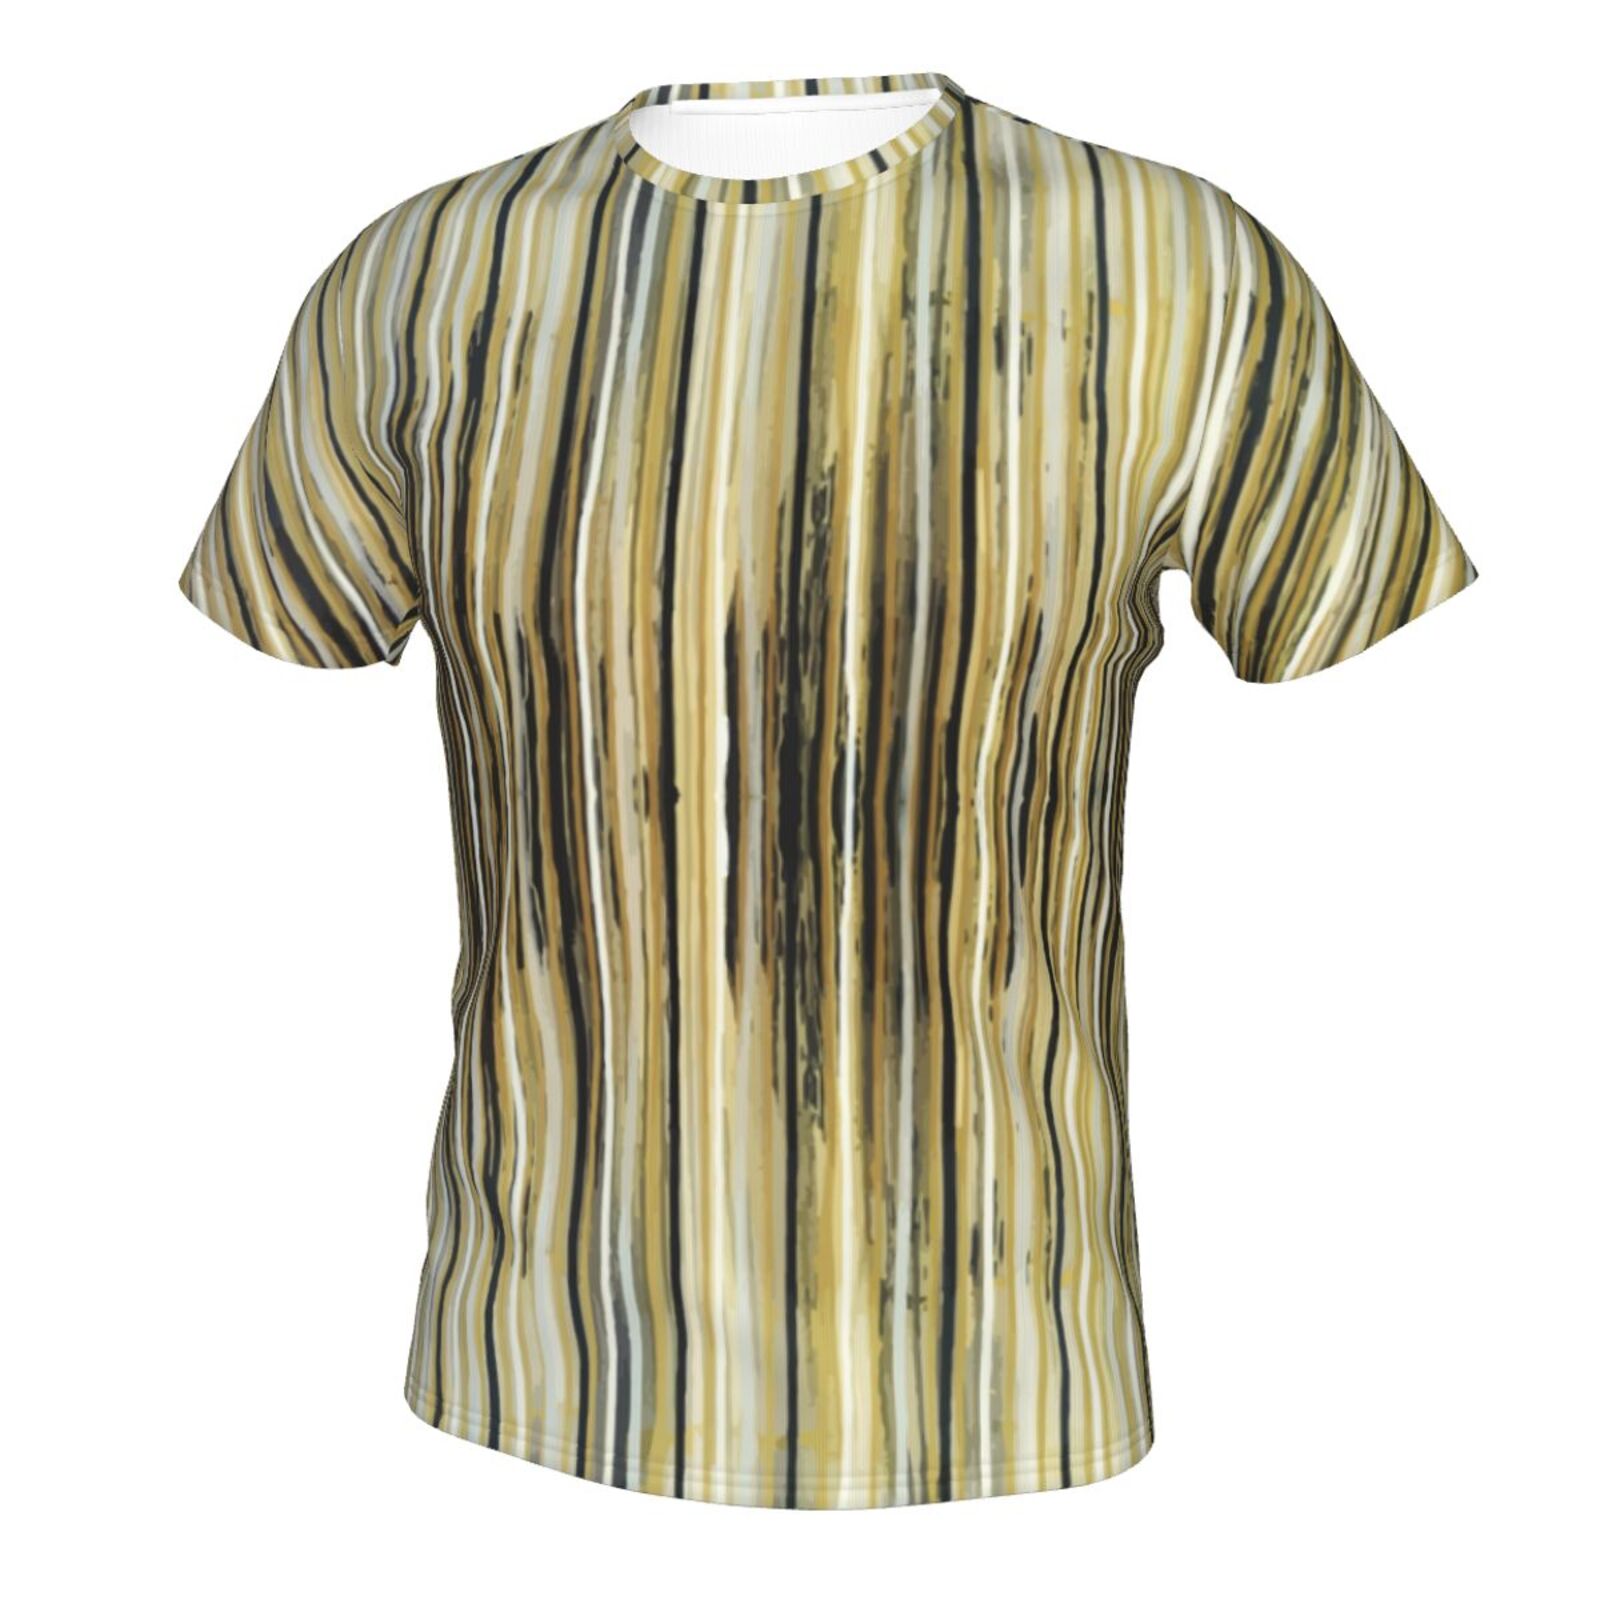 A Crush On Stripes Malerei Elemente Klassisch Österreich T-shirt